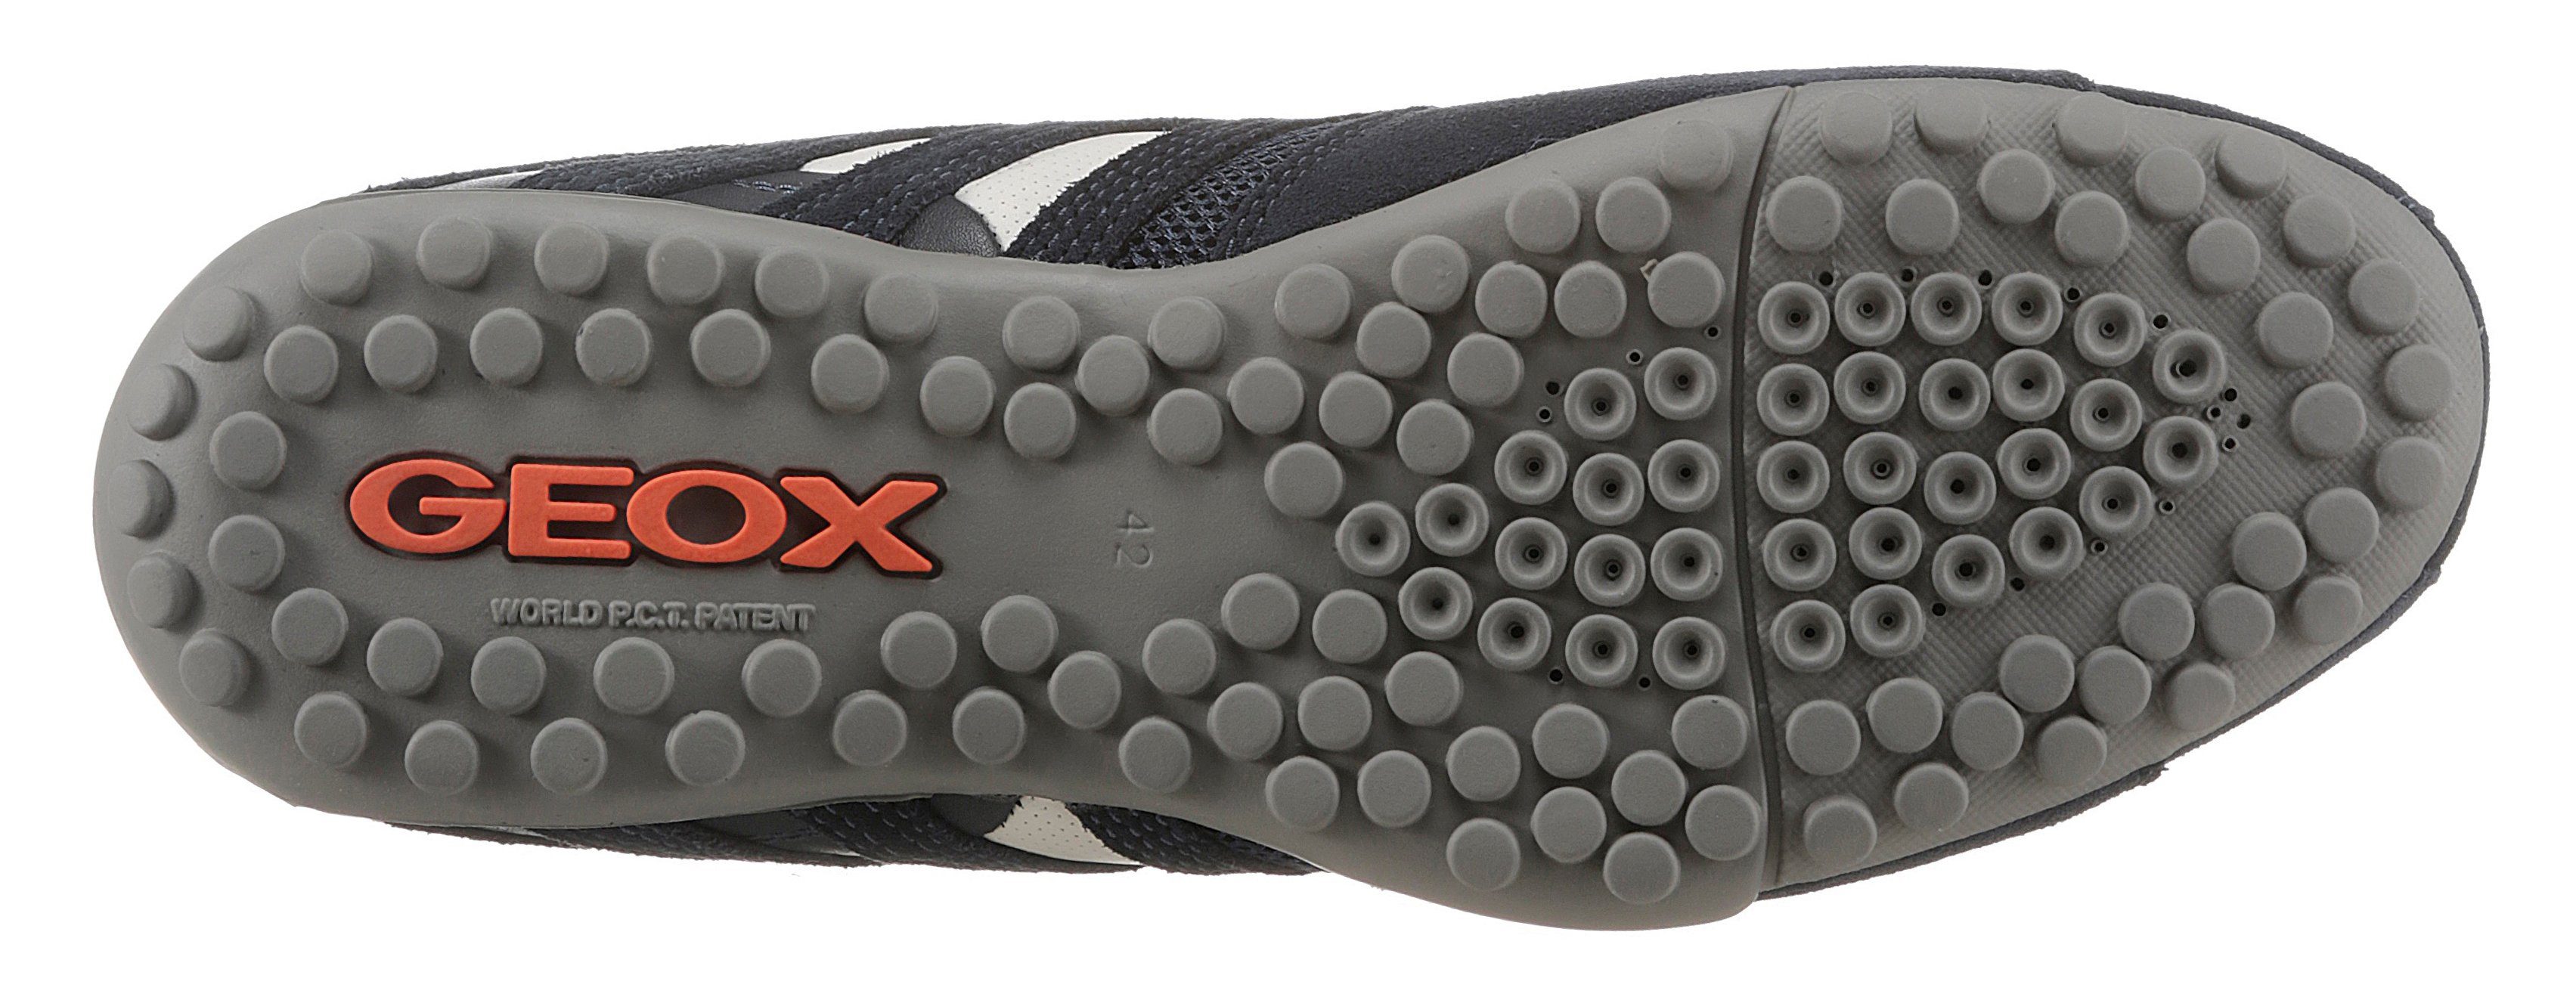 Membrane dunkel-blau UOMO und Geox Sneaker mit Ziernähten Spezial Slip-On SNAKE mit modischen Geox